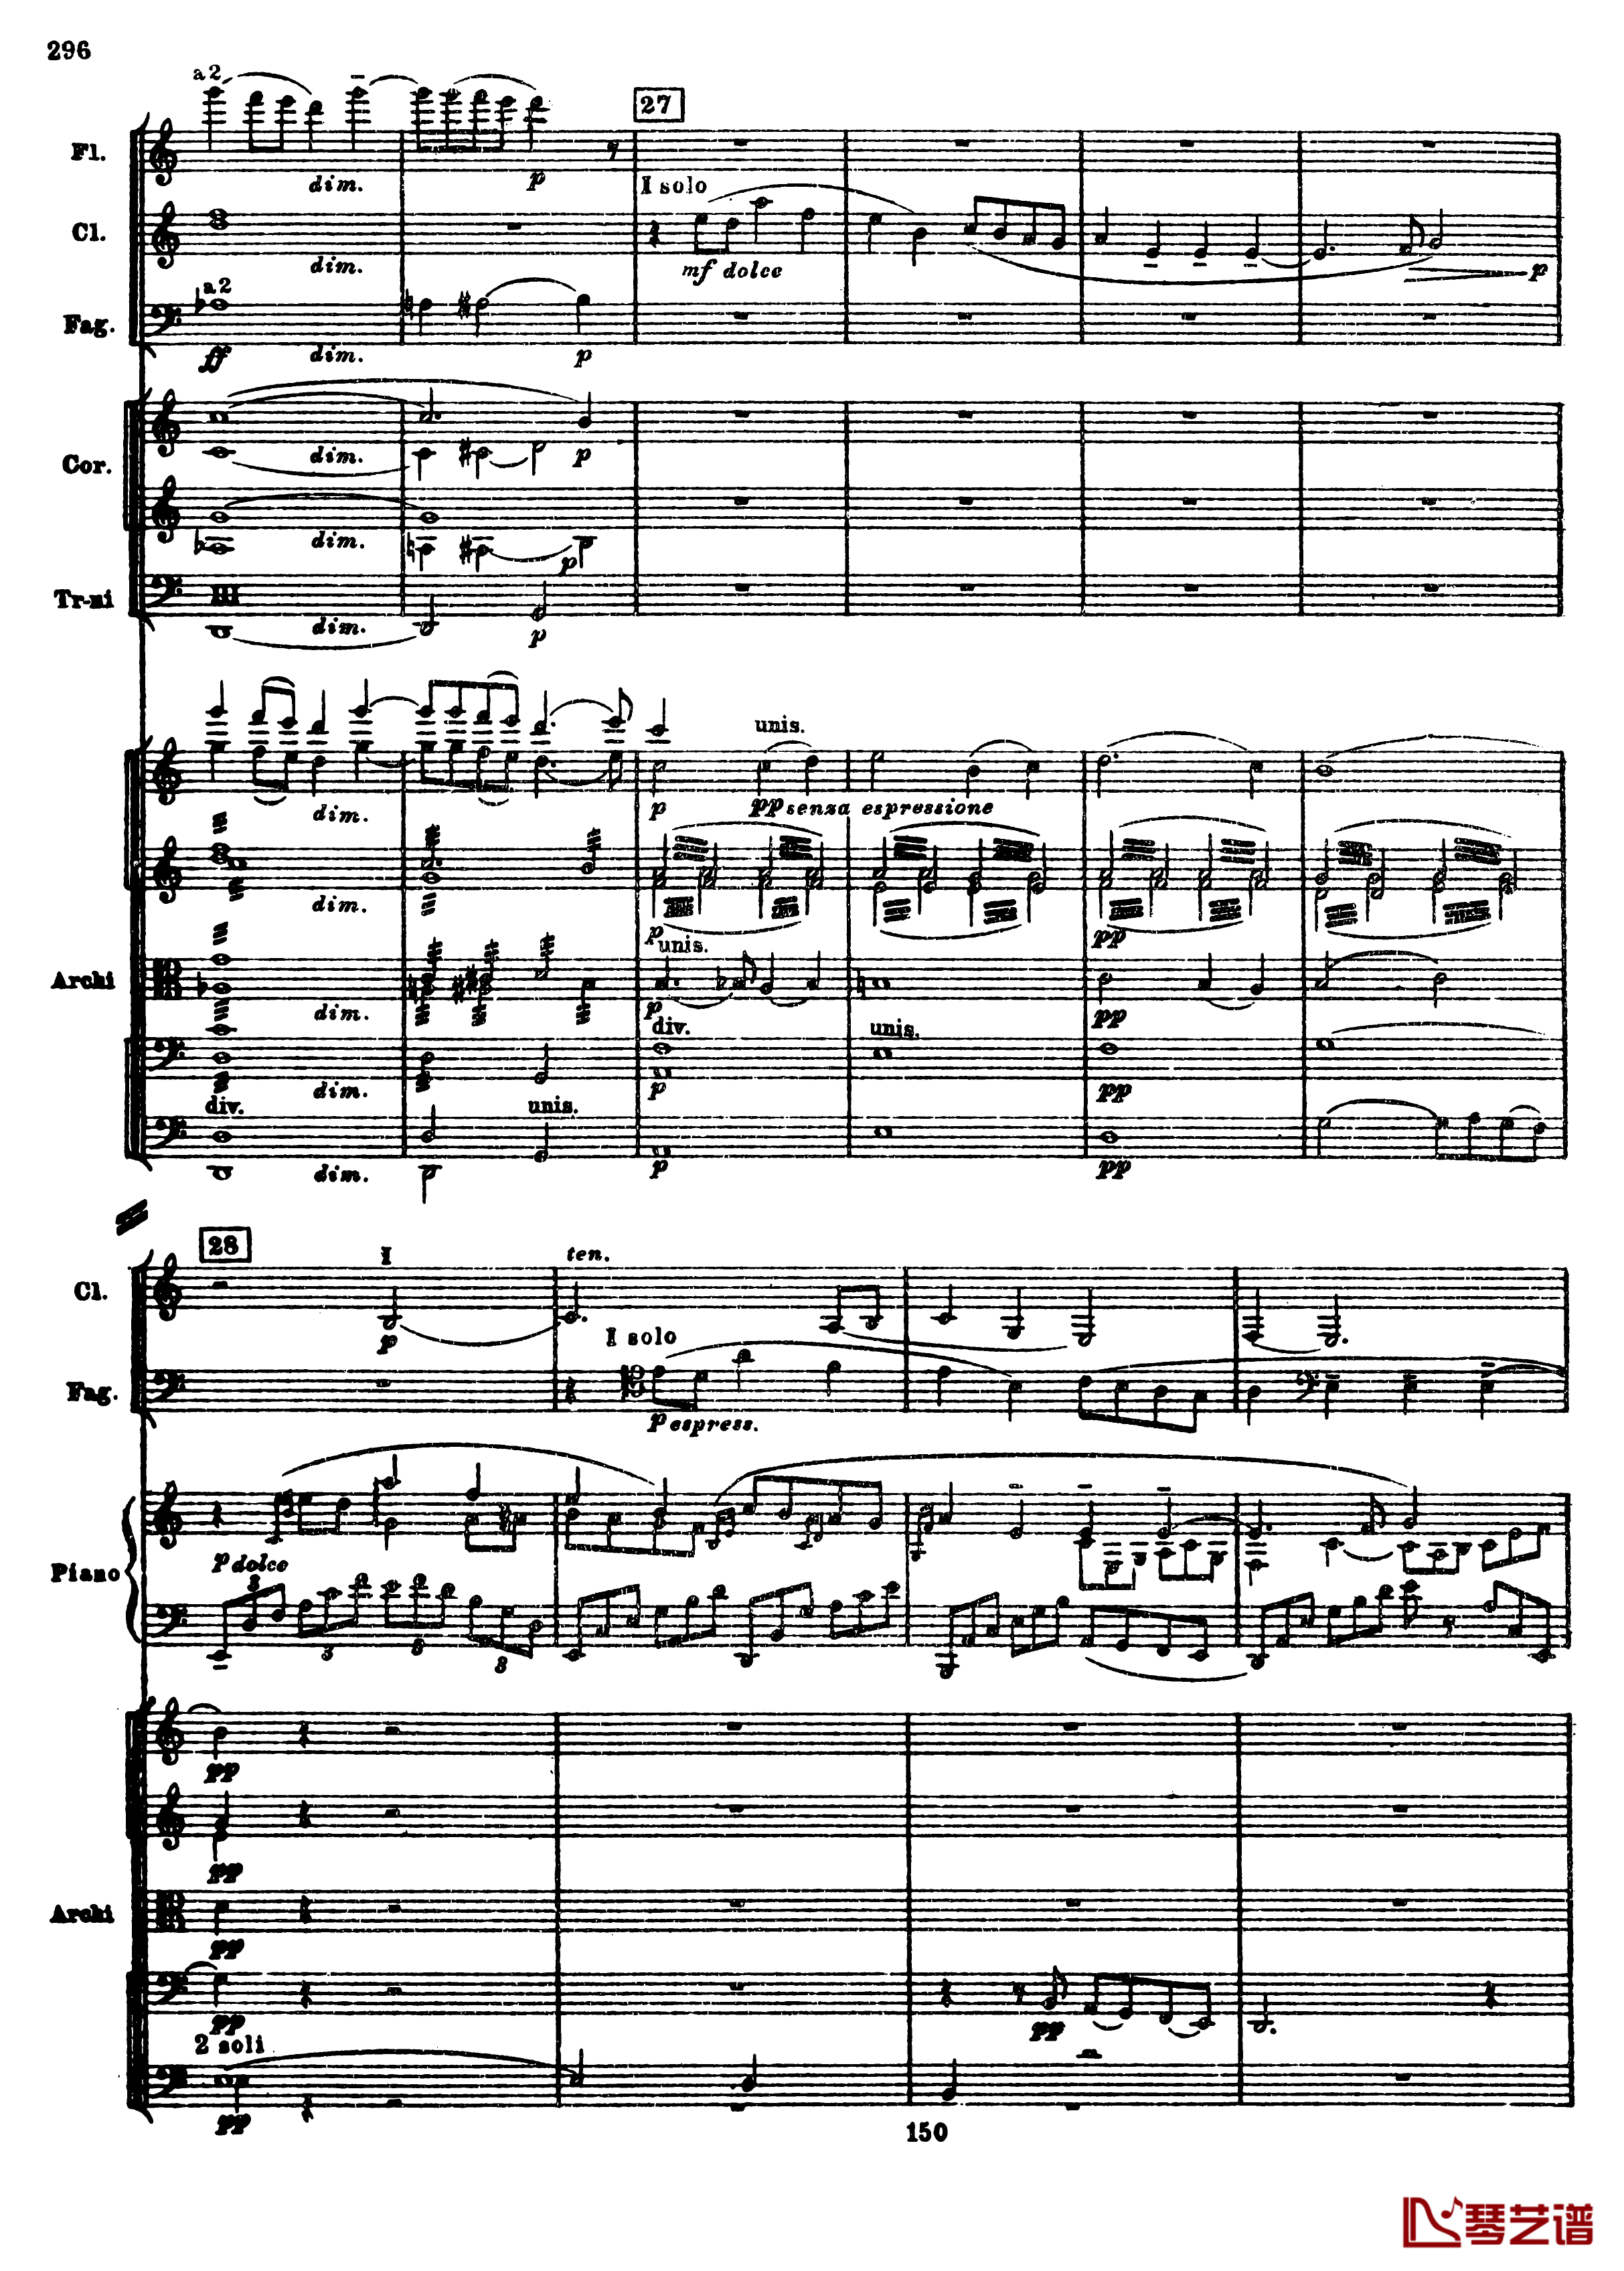 普罗科菲耶夫第三钢琴协奏曲钢琴谱-总谱-普罗科非耶夫28